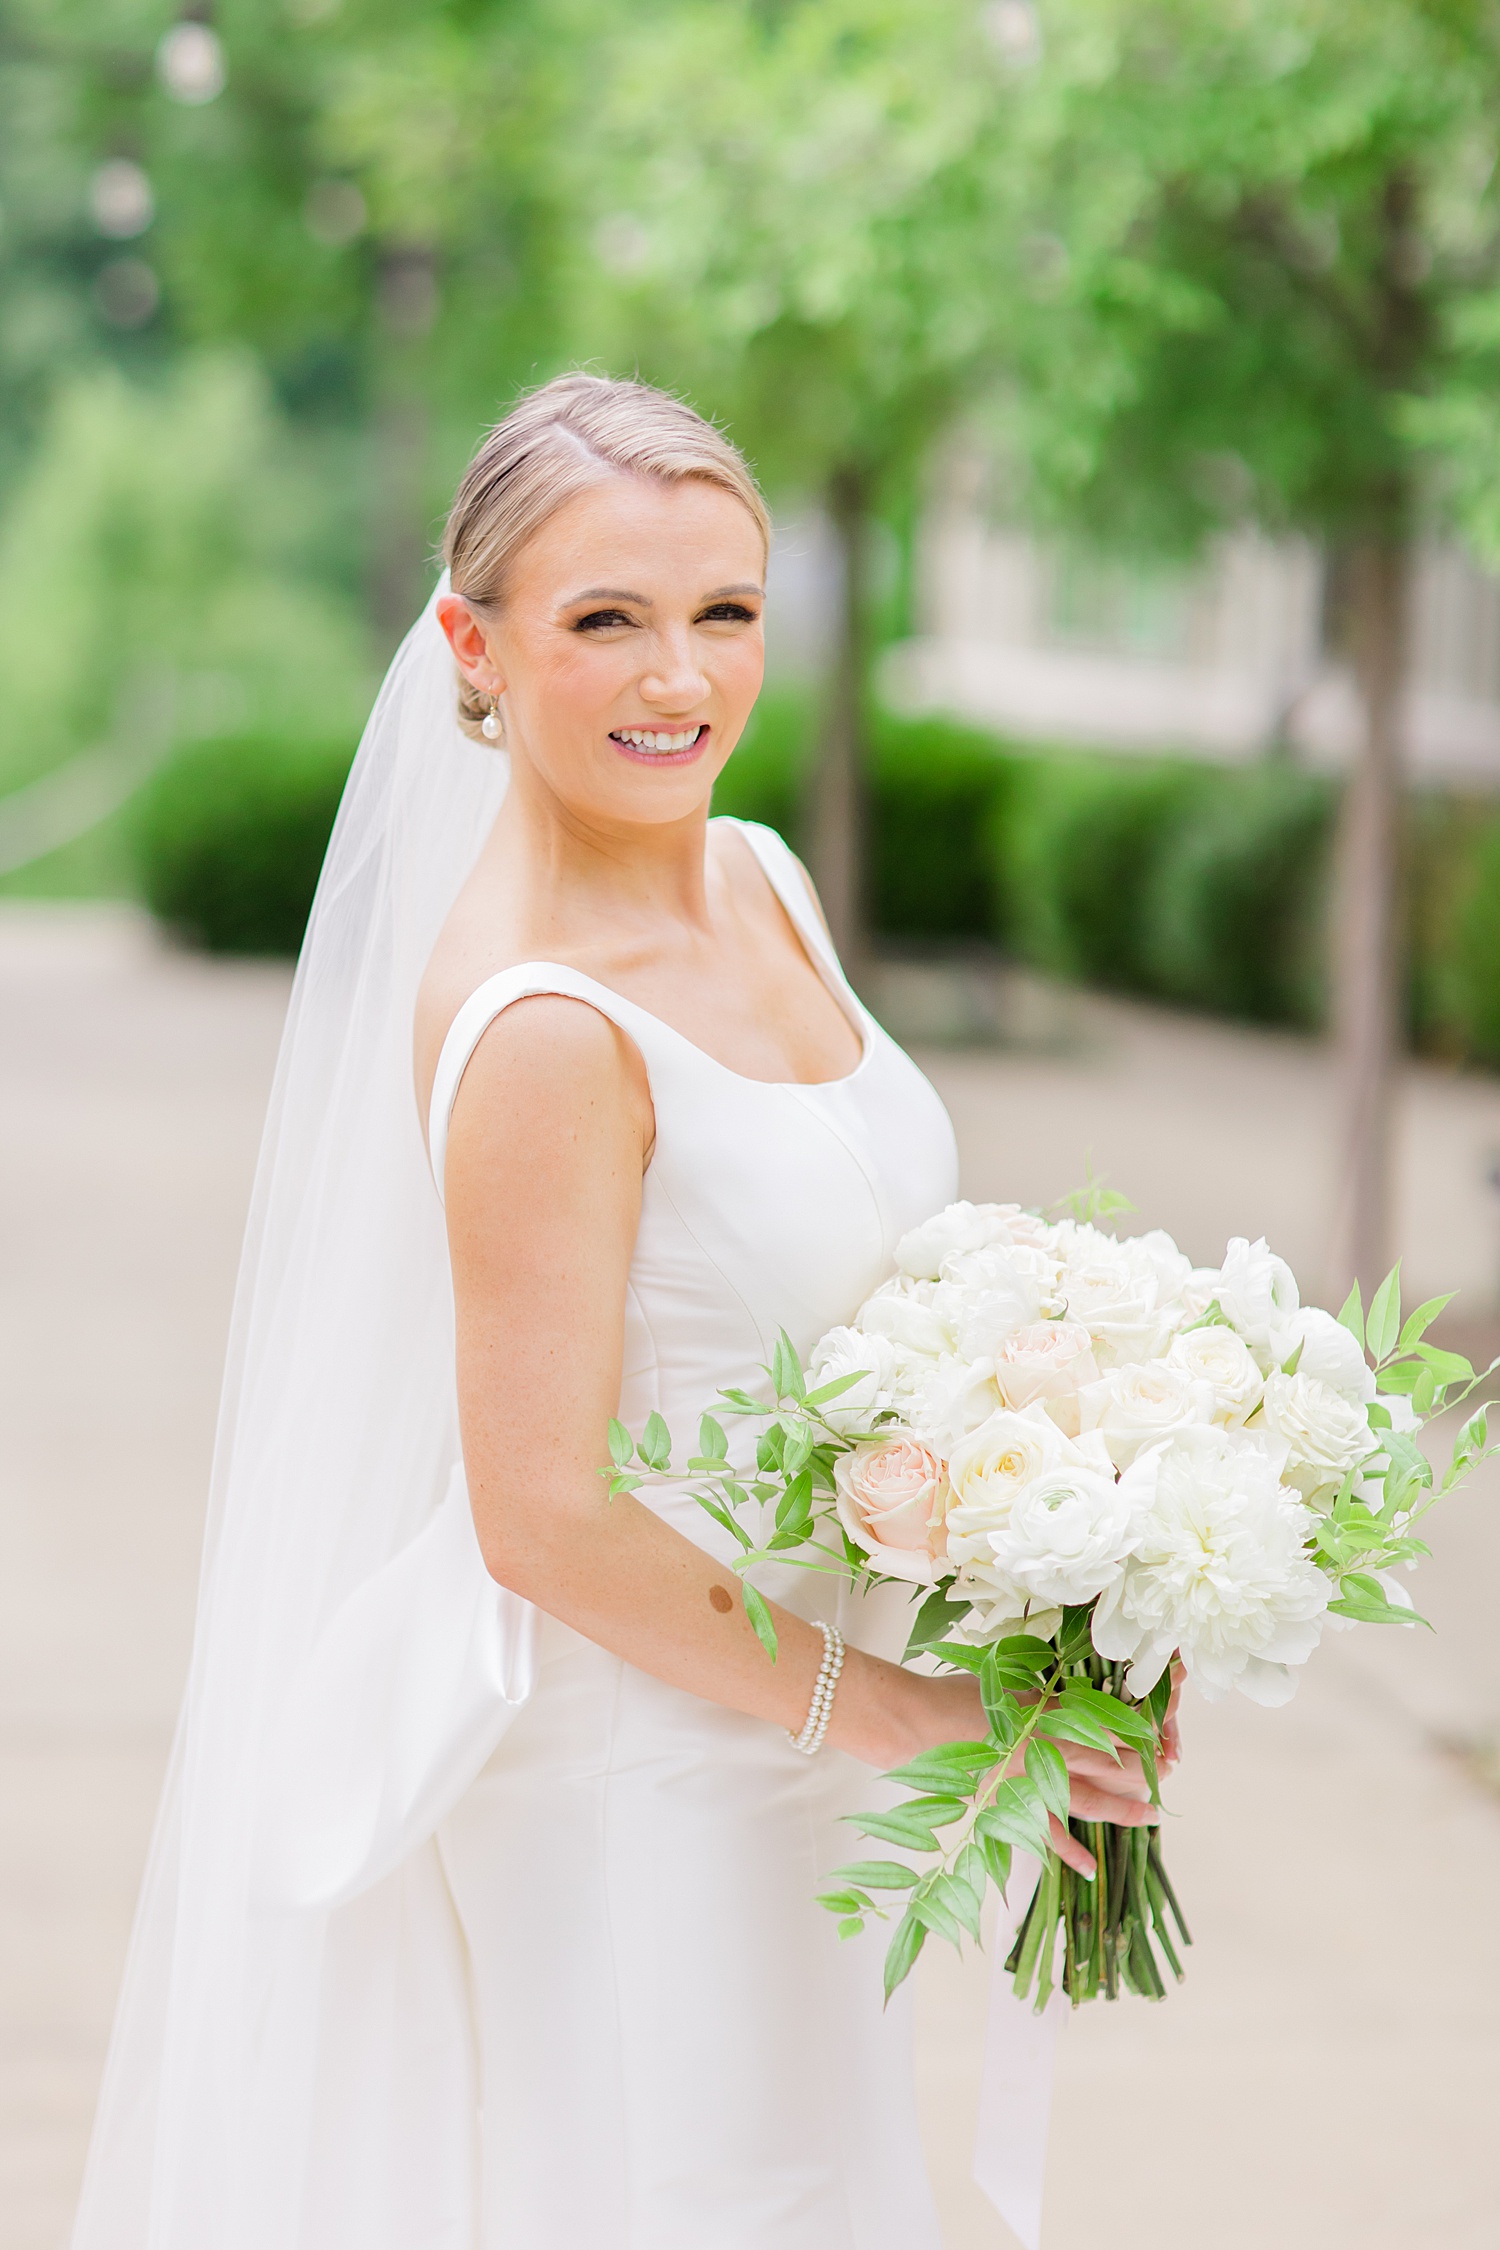 bride holding wedding flower bouquet